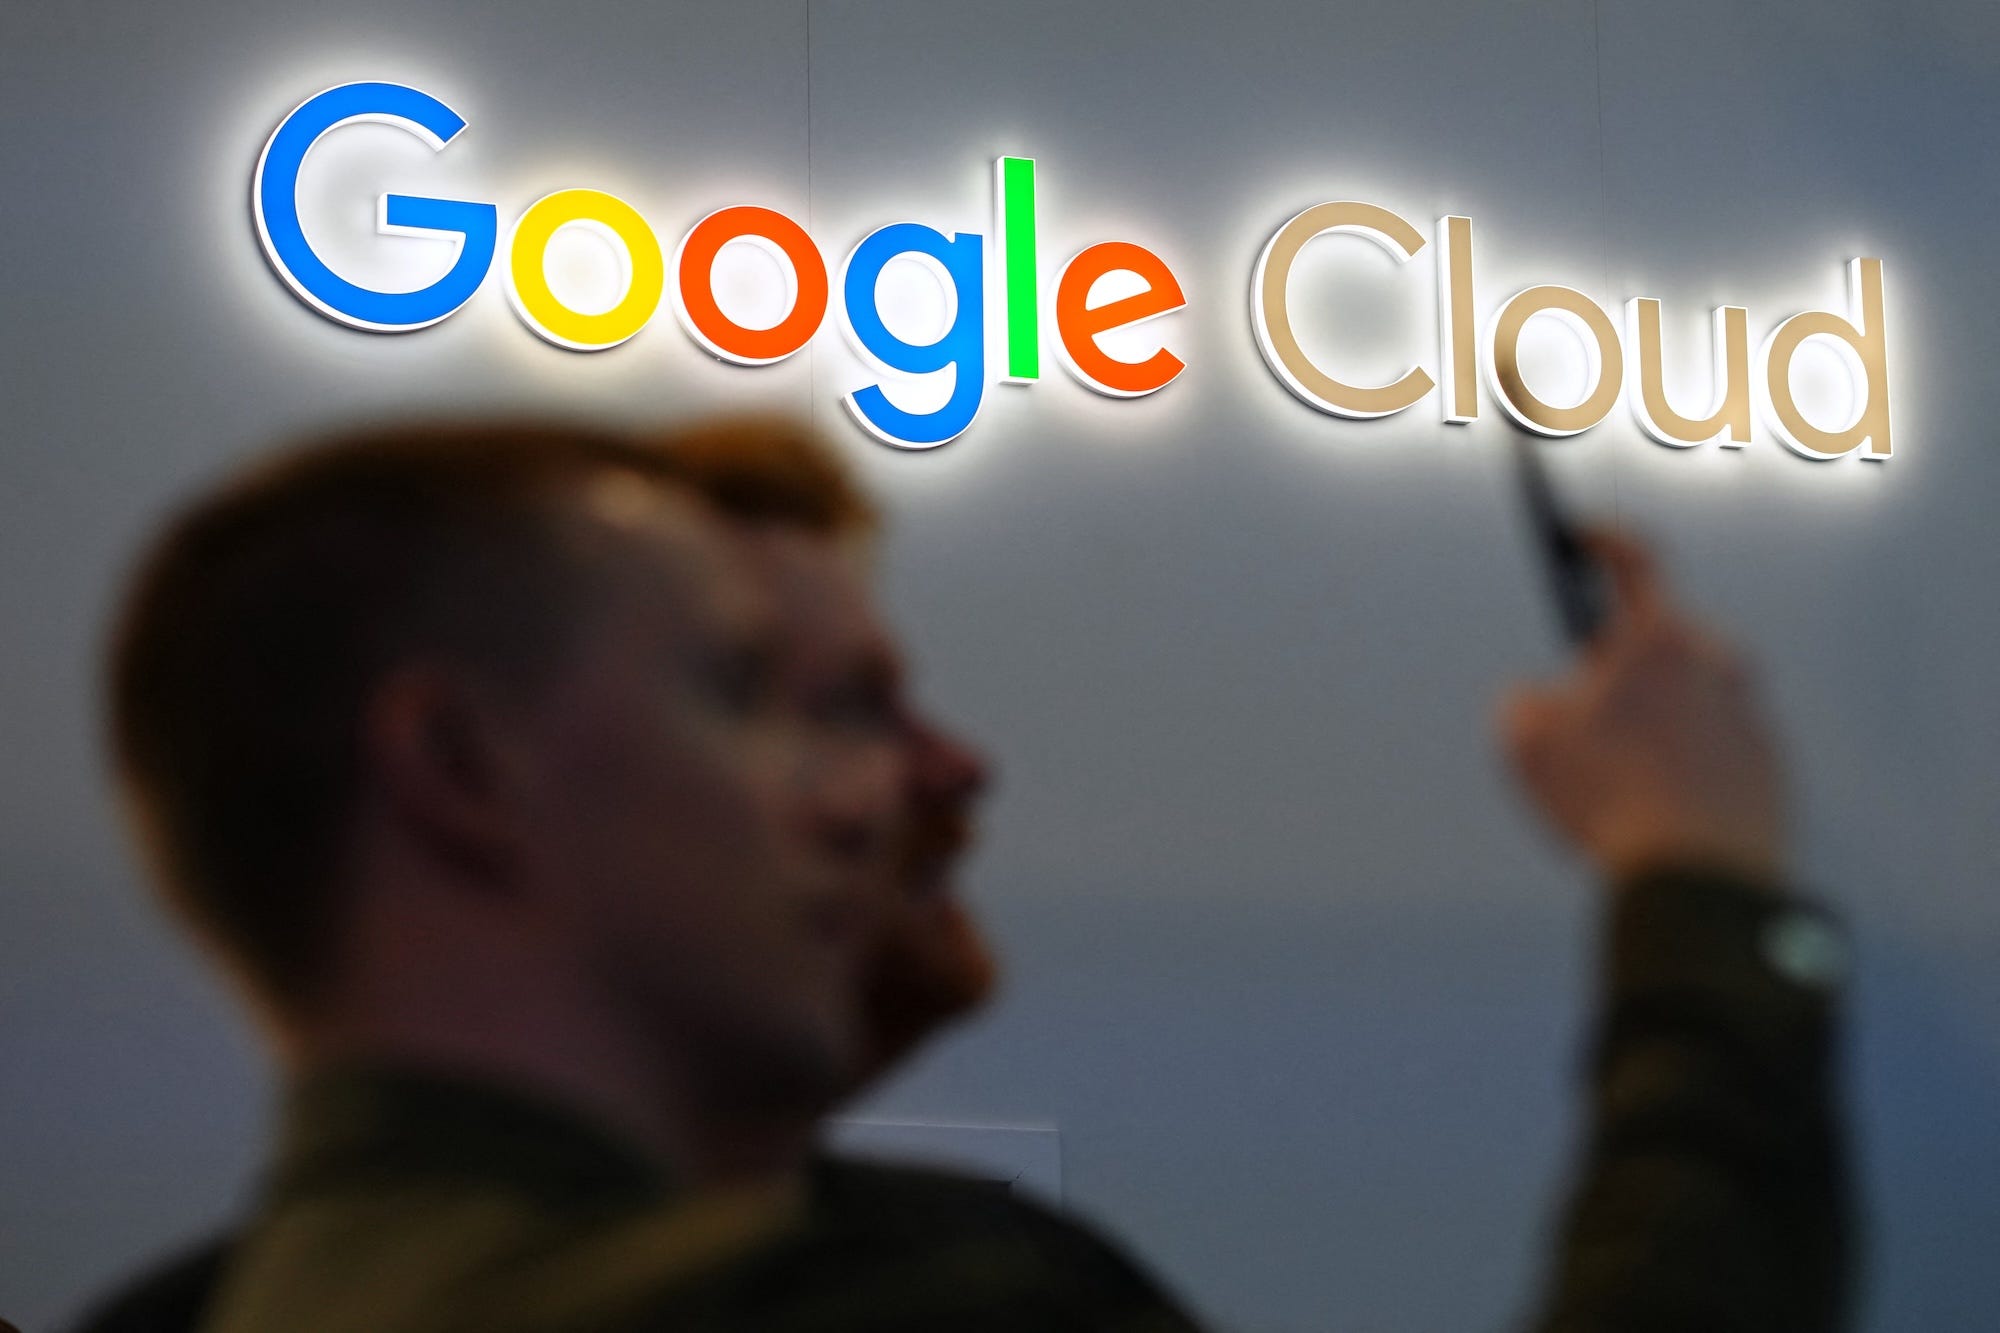 Zwei verschwommene Figuren mit einem Smartphone stehen vor dem Google Cloud-Logo an einer Wand.